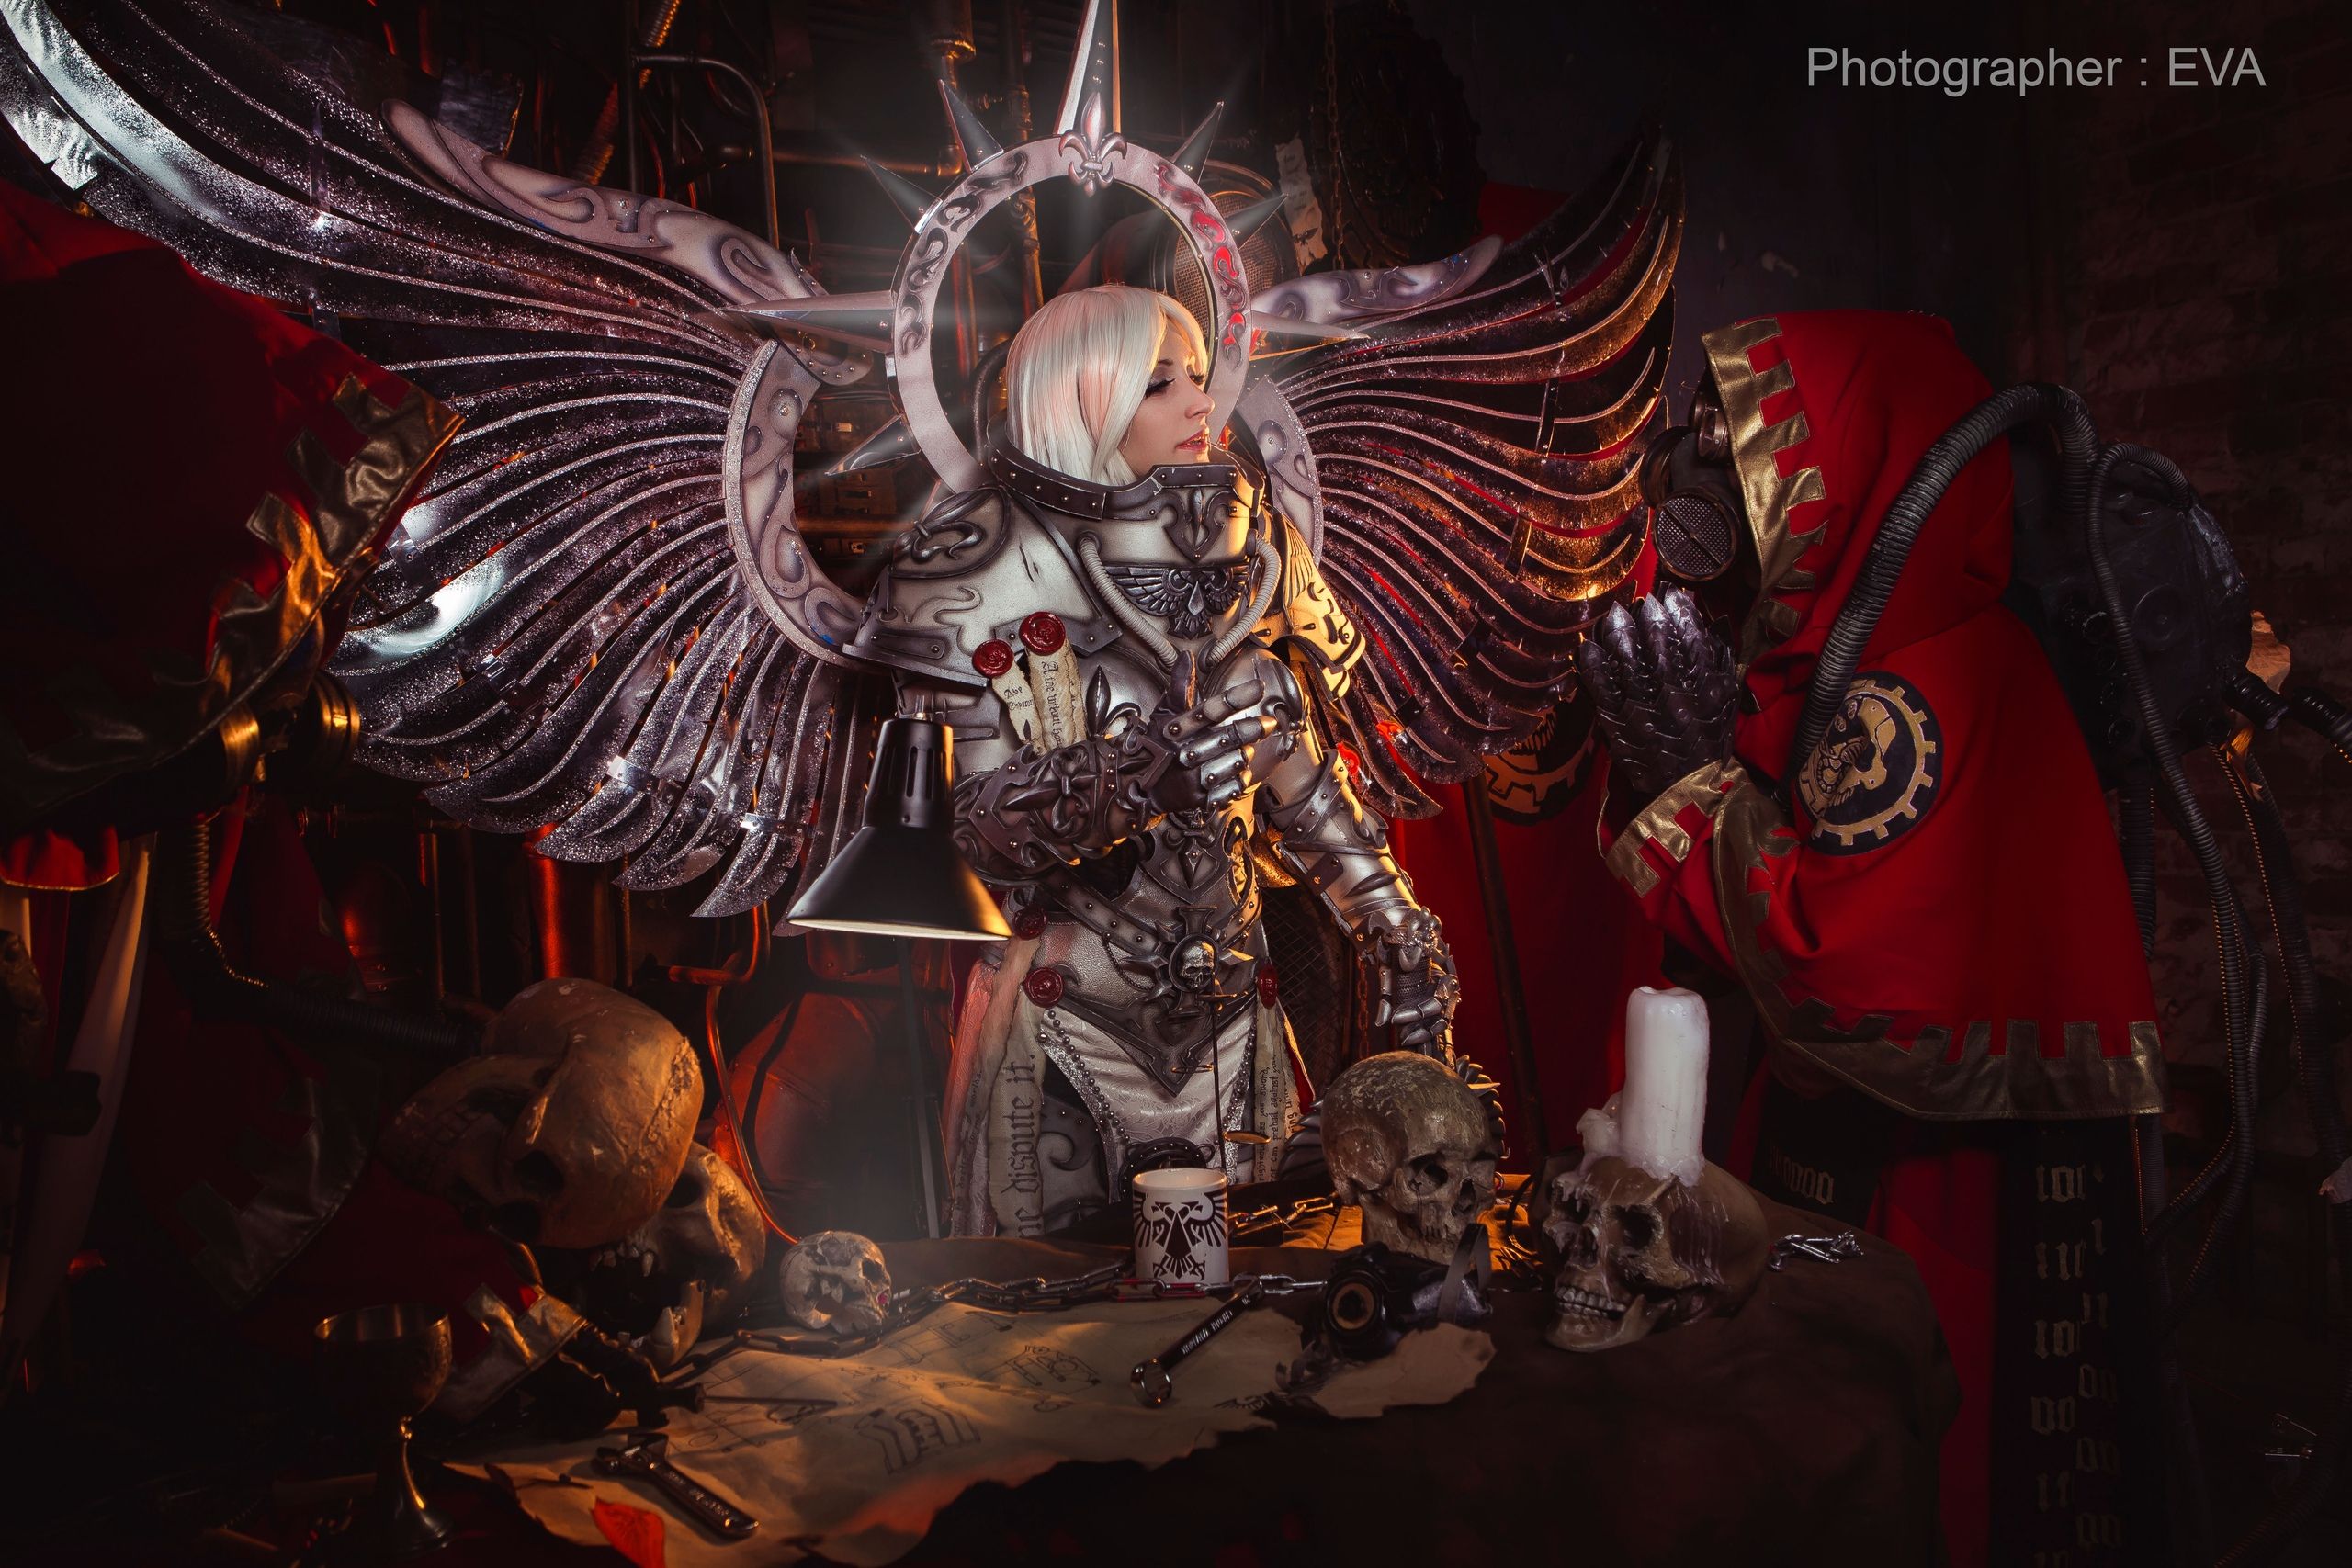 Косплей на Saint Silvana, Adeptus Mechanicus. Warhammer40000. Косплееры: Вrickus, Uchiha Madara, Dominion Terran. Источник: vk.com/eva_cosplay